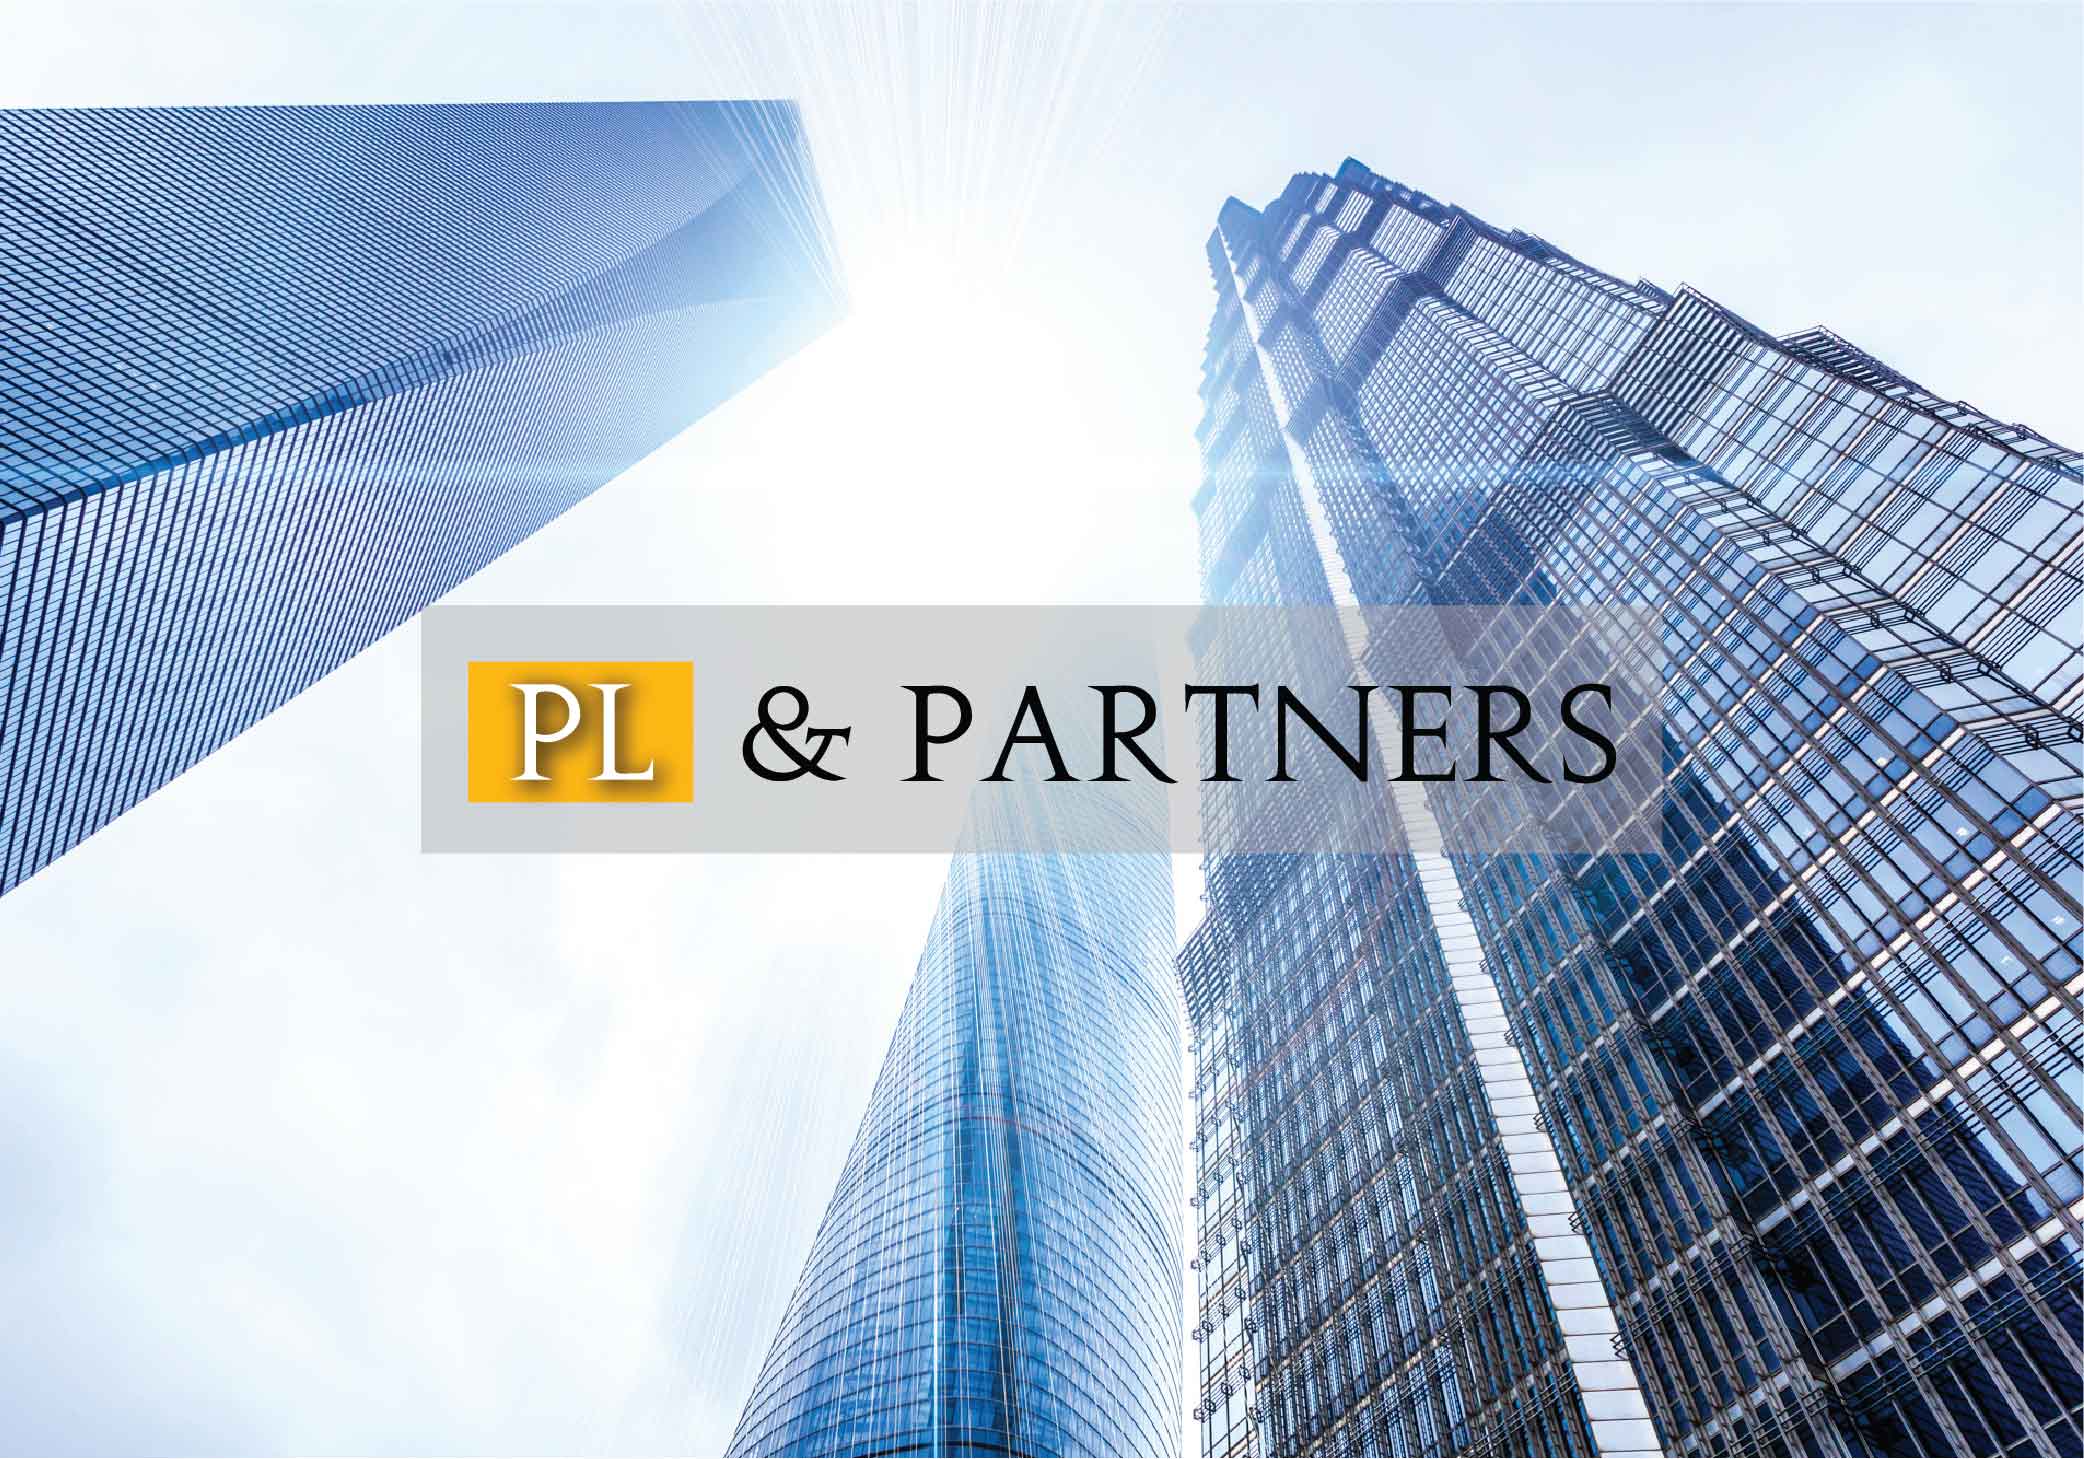 Công ty luật PL&Partners là một lựa chọn tuyệt vời cho quý khách hàng khi cần sử dụng dịch vụ luật sư nội bộ